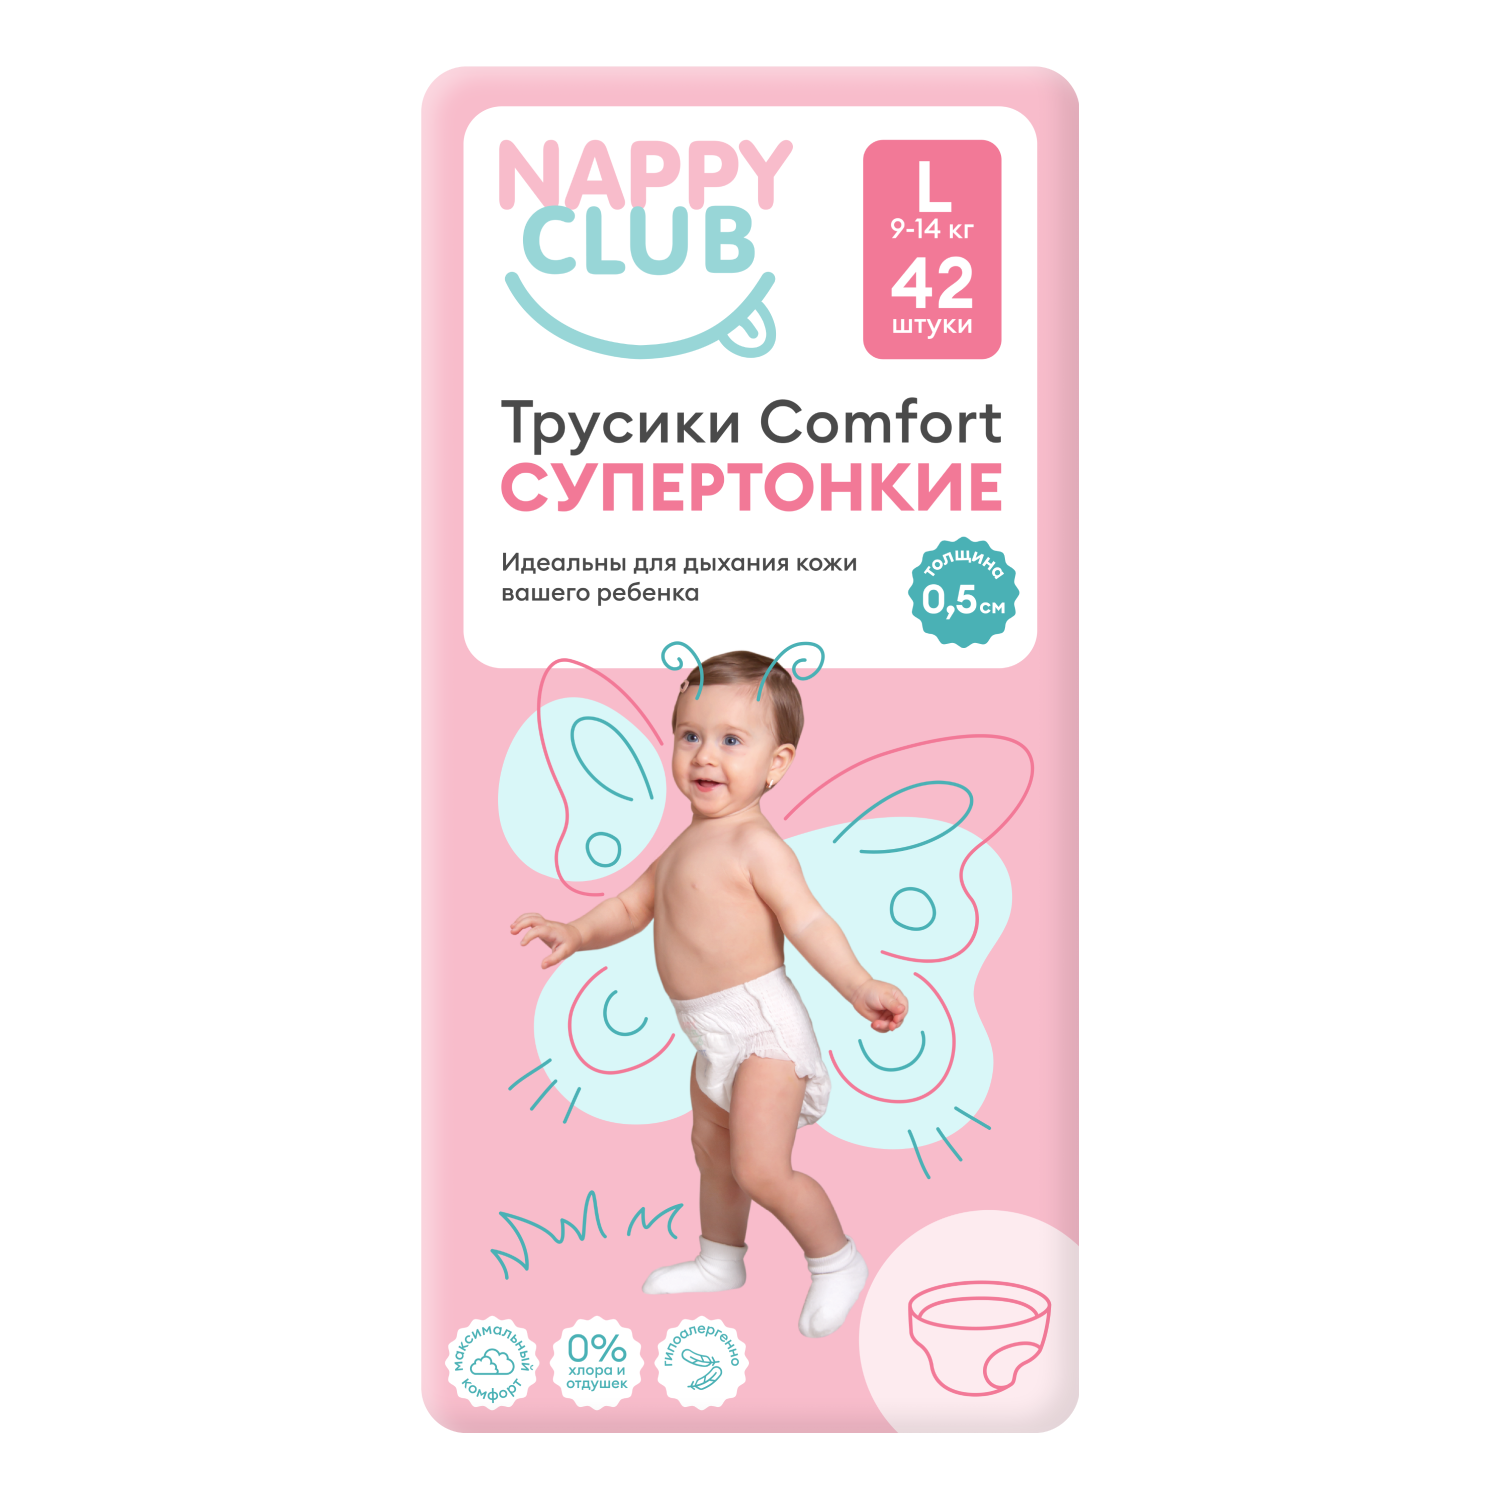 NappyClub трусики Comfort дневные супер-тонкие L (9-14 кг) 42 шт. 4603305870369 - фото 1